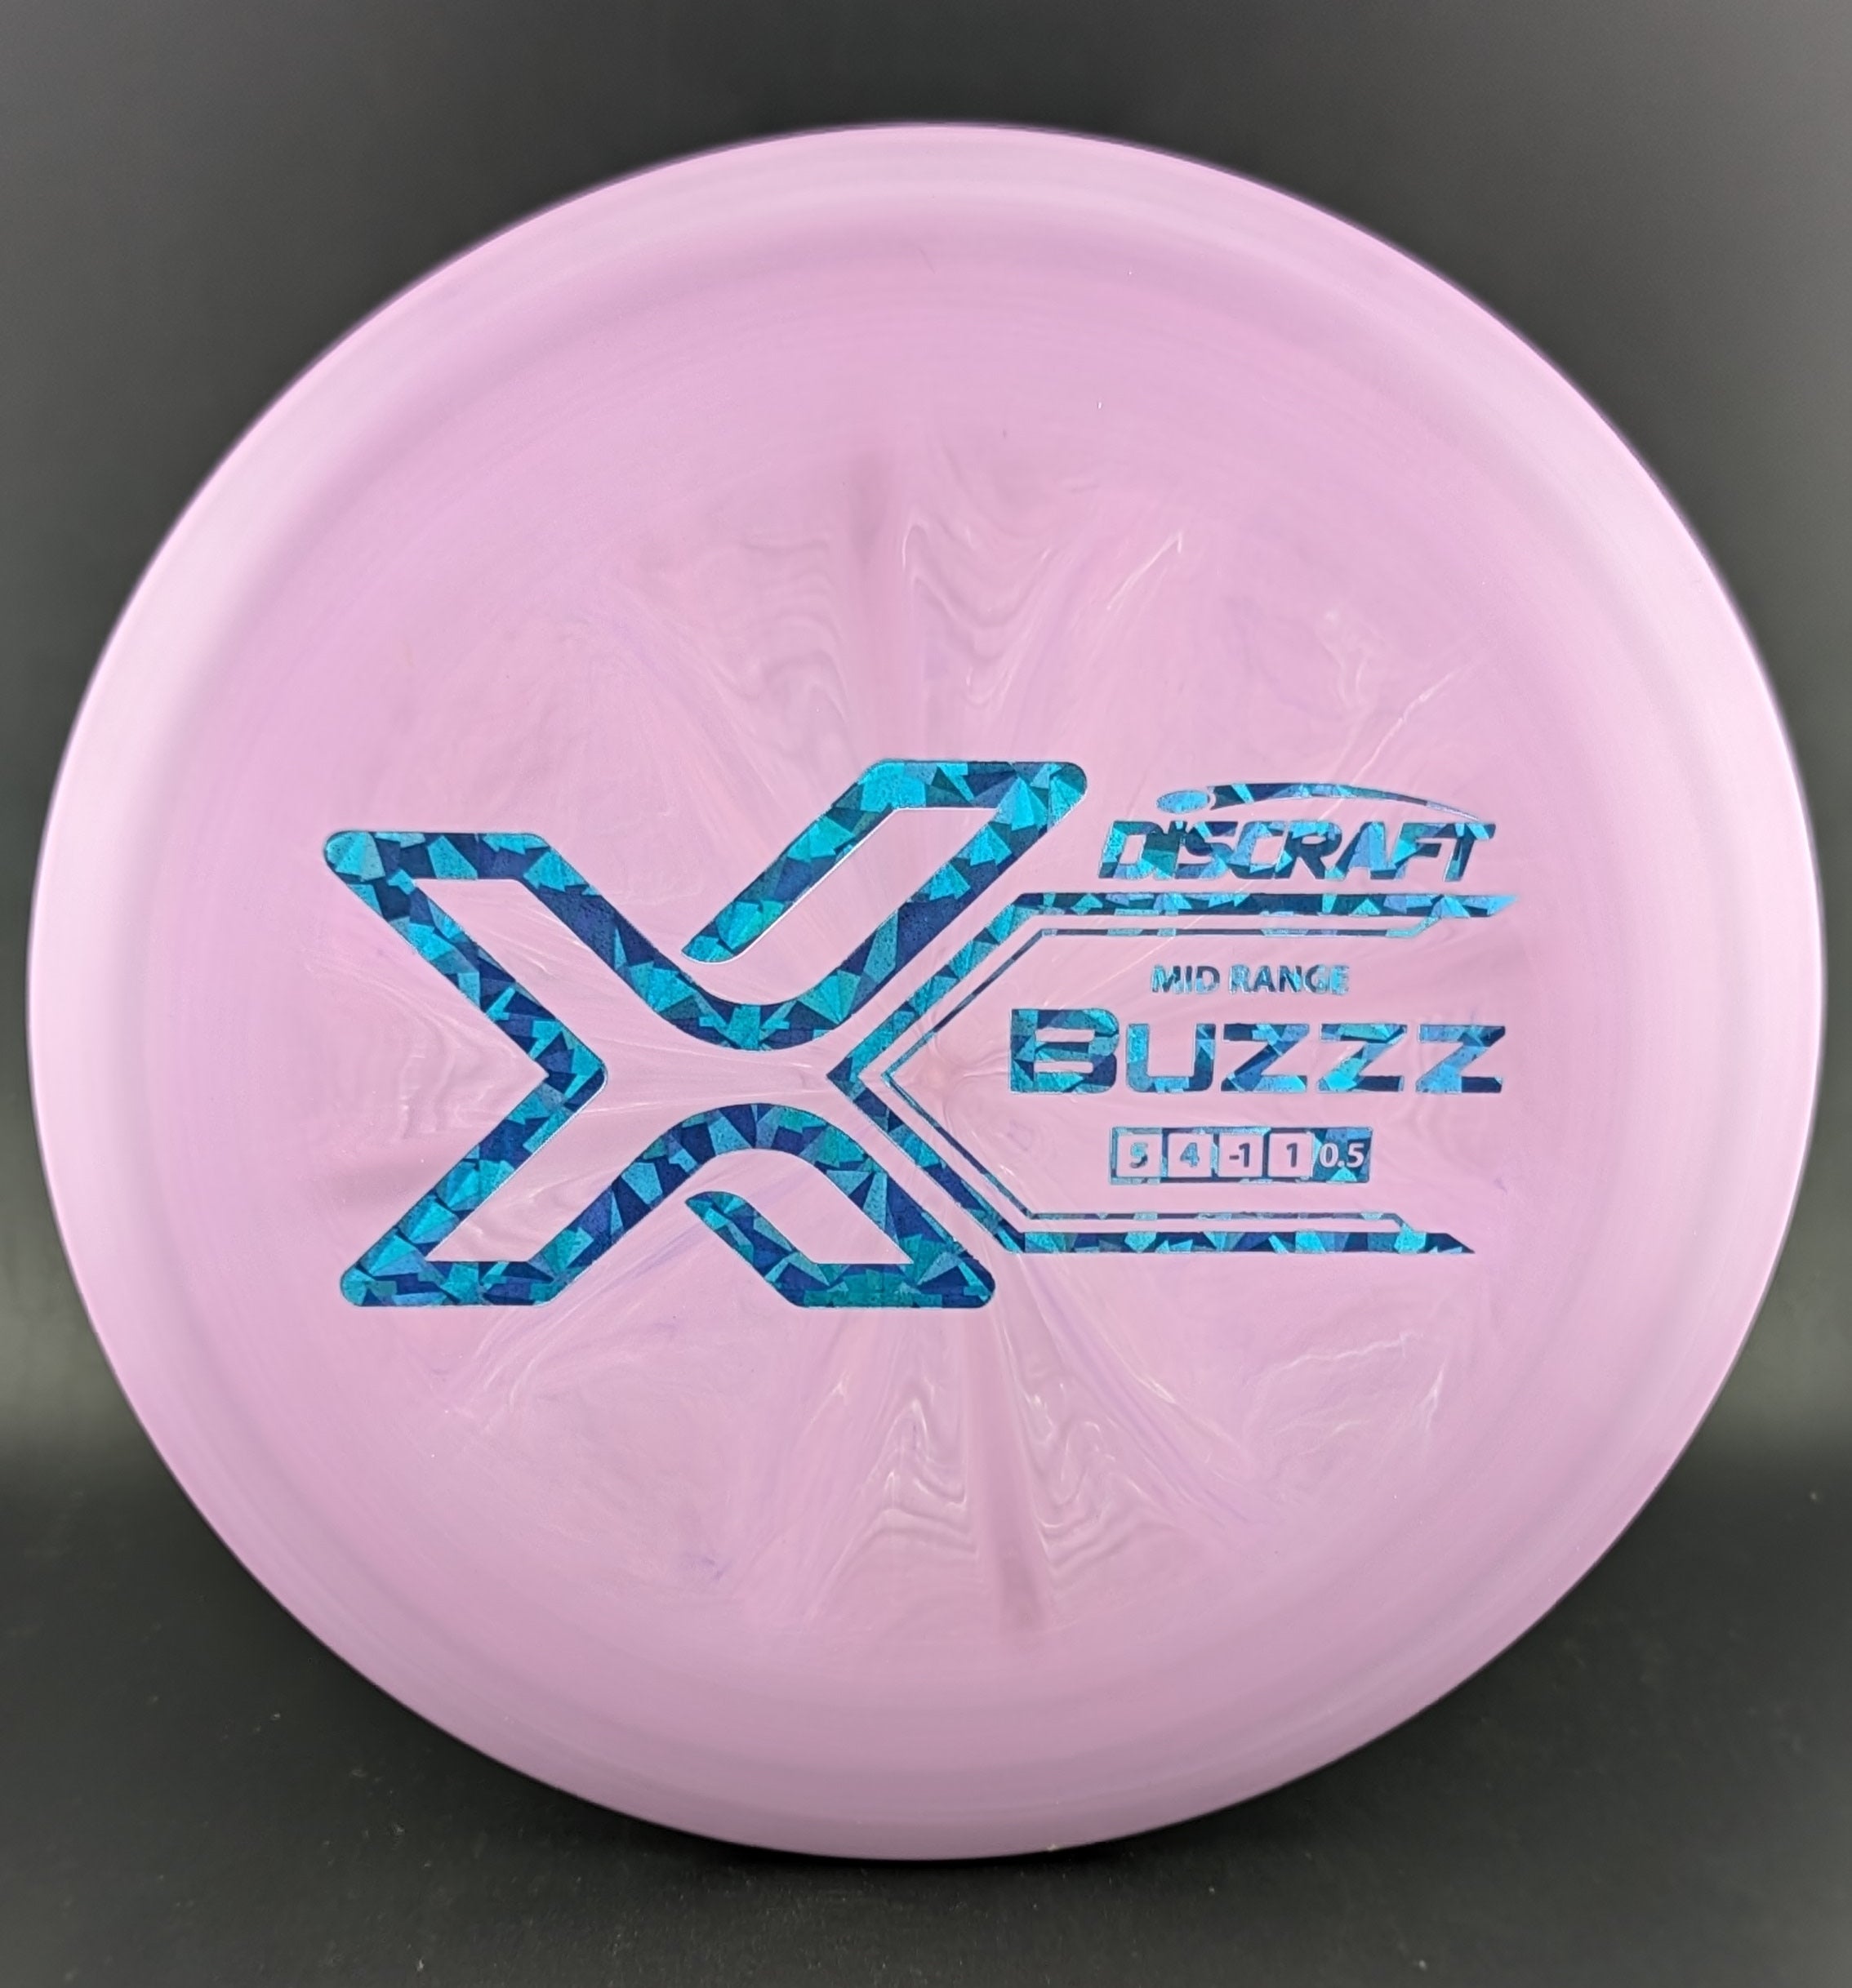 X Line Buzzz - 0